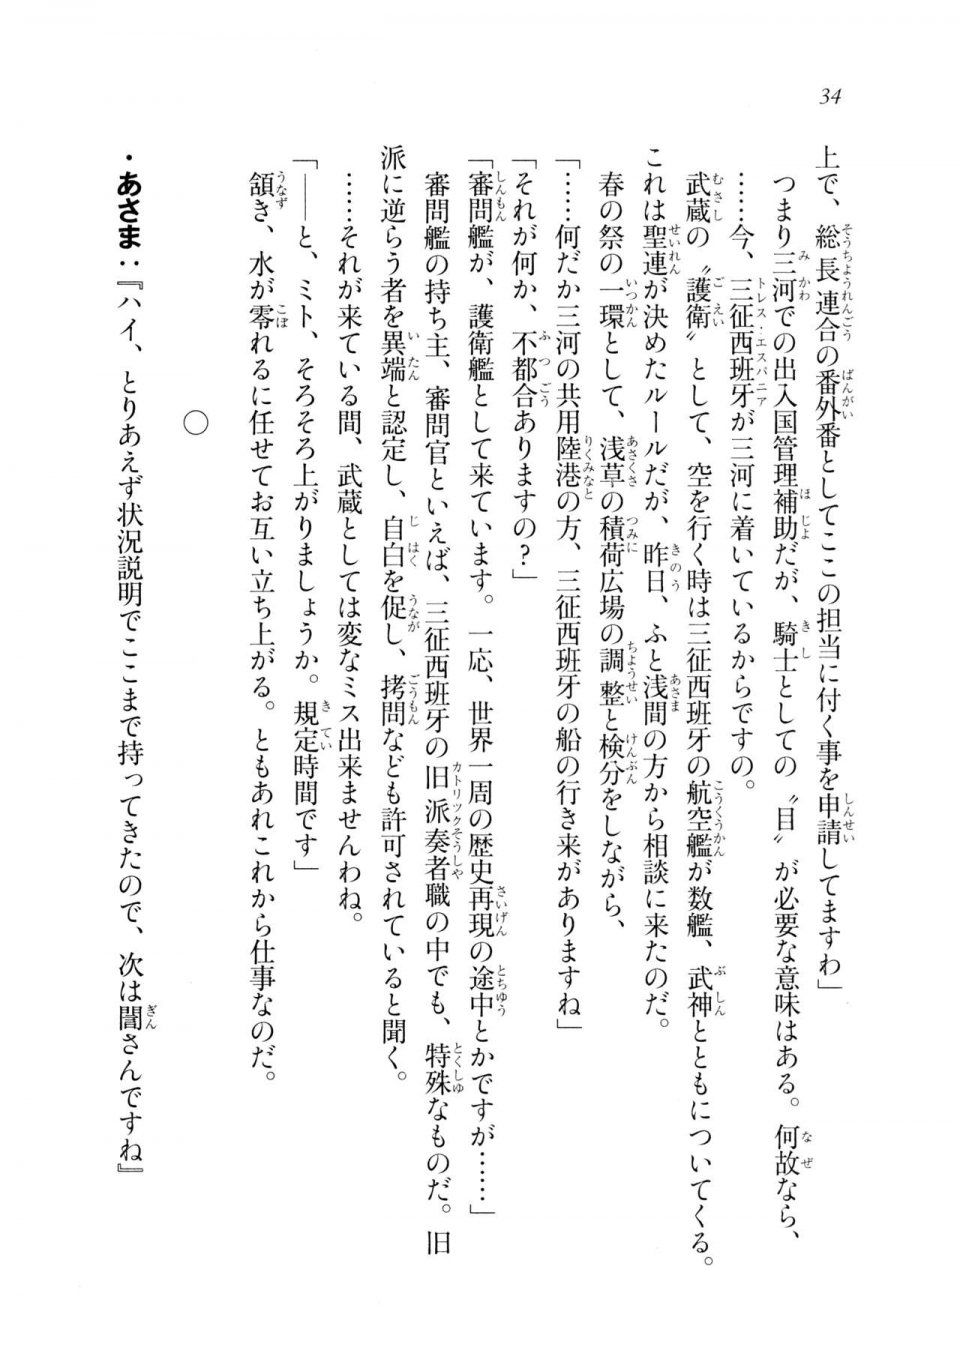 Kyoukai Senjou no Horizon LN Sidestory Vol 2 - Photo #32